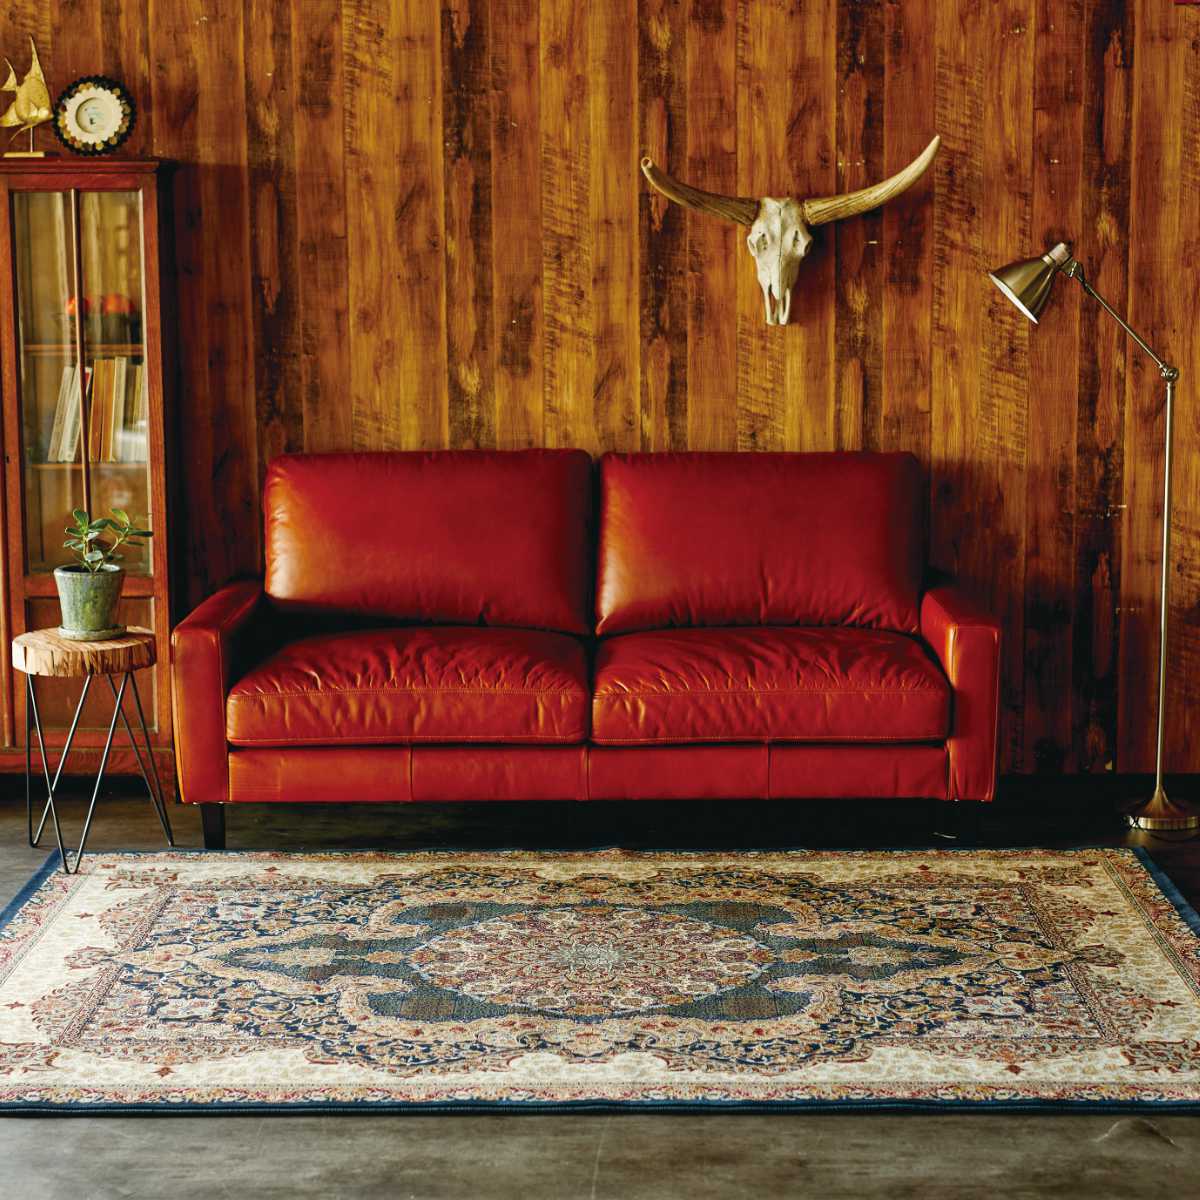 廉価版ラグ 200×250cm 色-レッド /エジプト製 ウィルトン織り クラシックデザイン 絨毯 床暖房ホットカーペット対応 ラグ一般